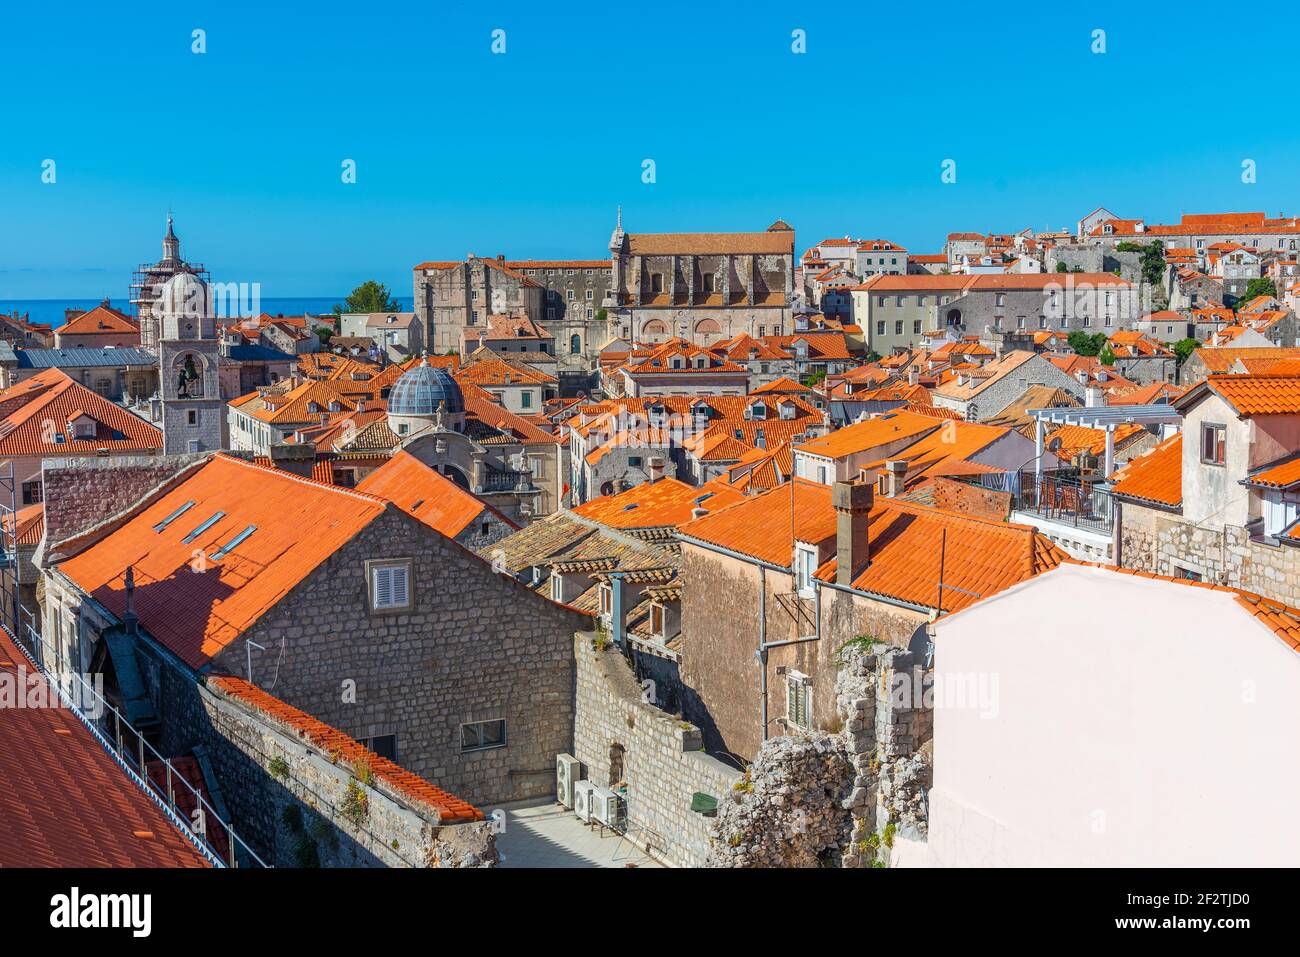 Vue aérienne des toits rouges de la vieille ville de Dubrovnik, Croatie Banque D'Images